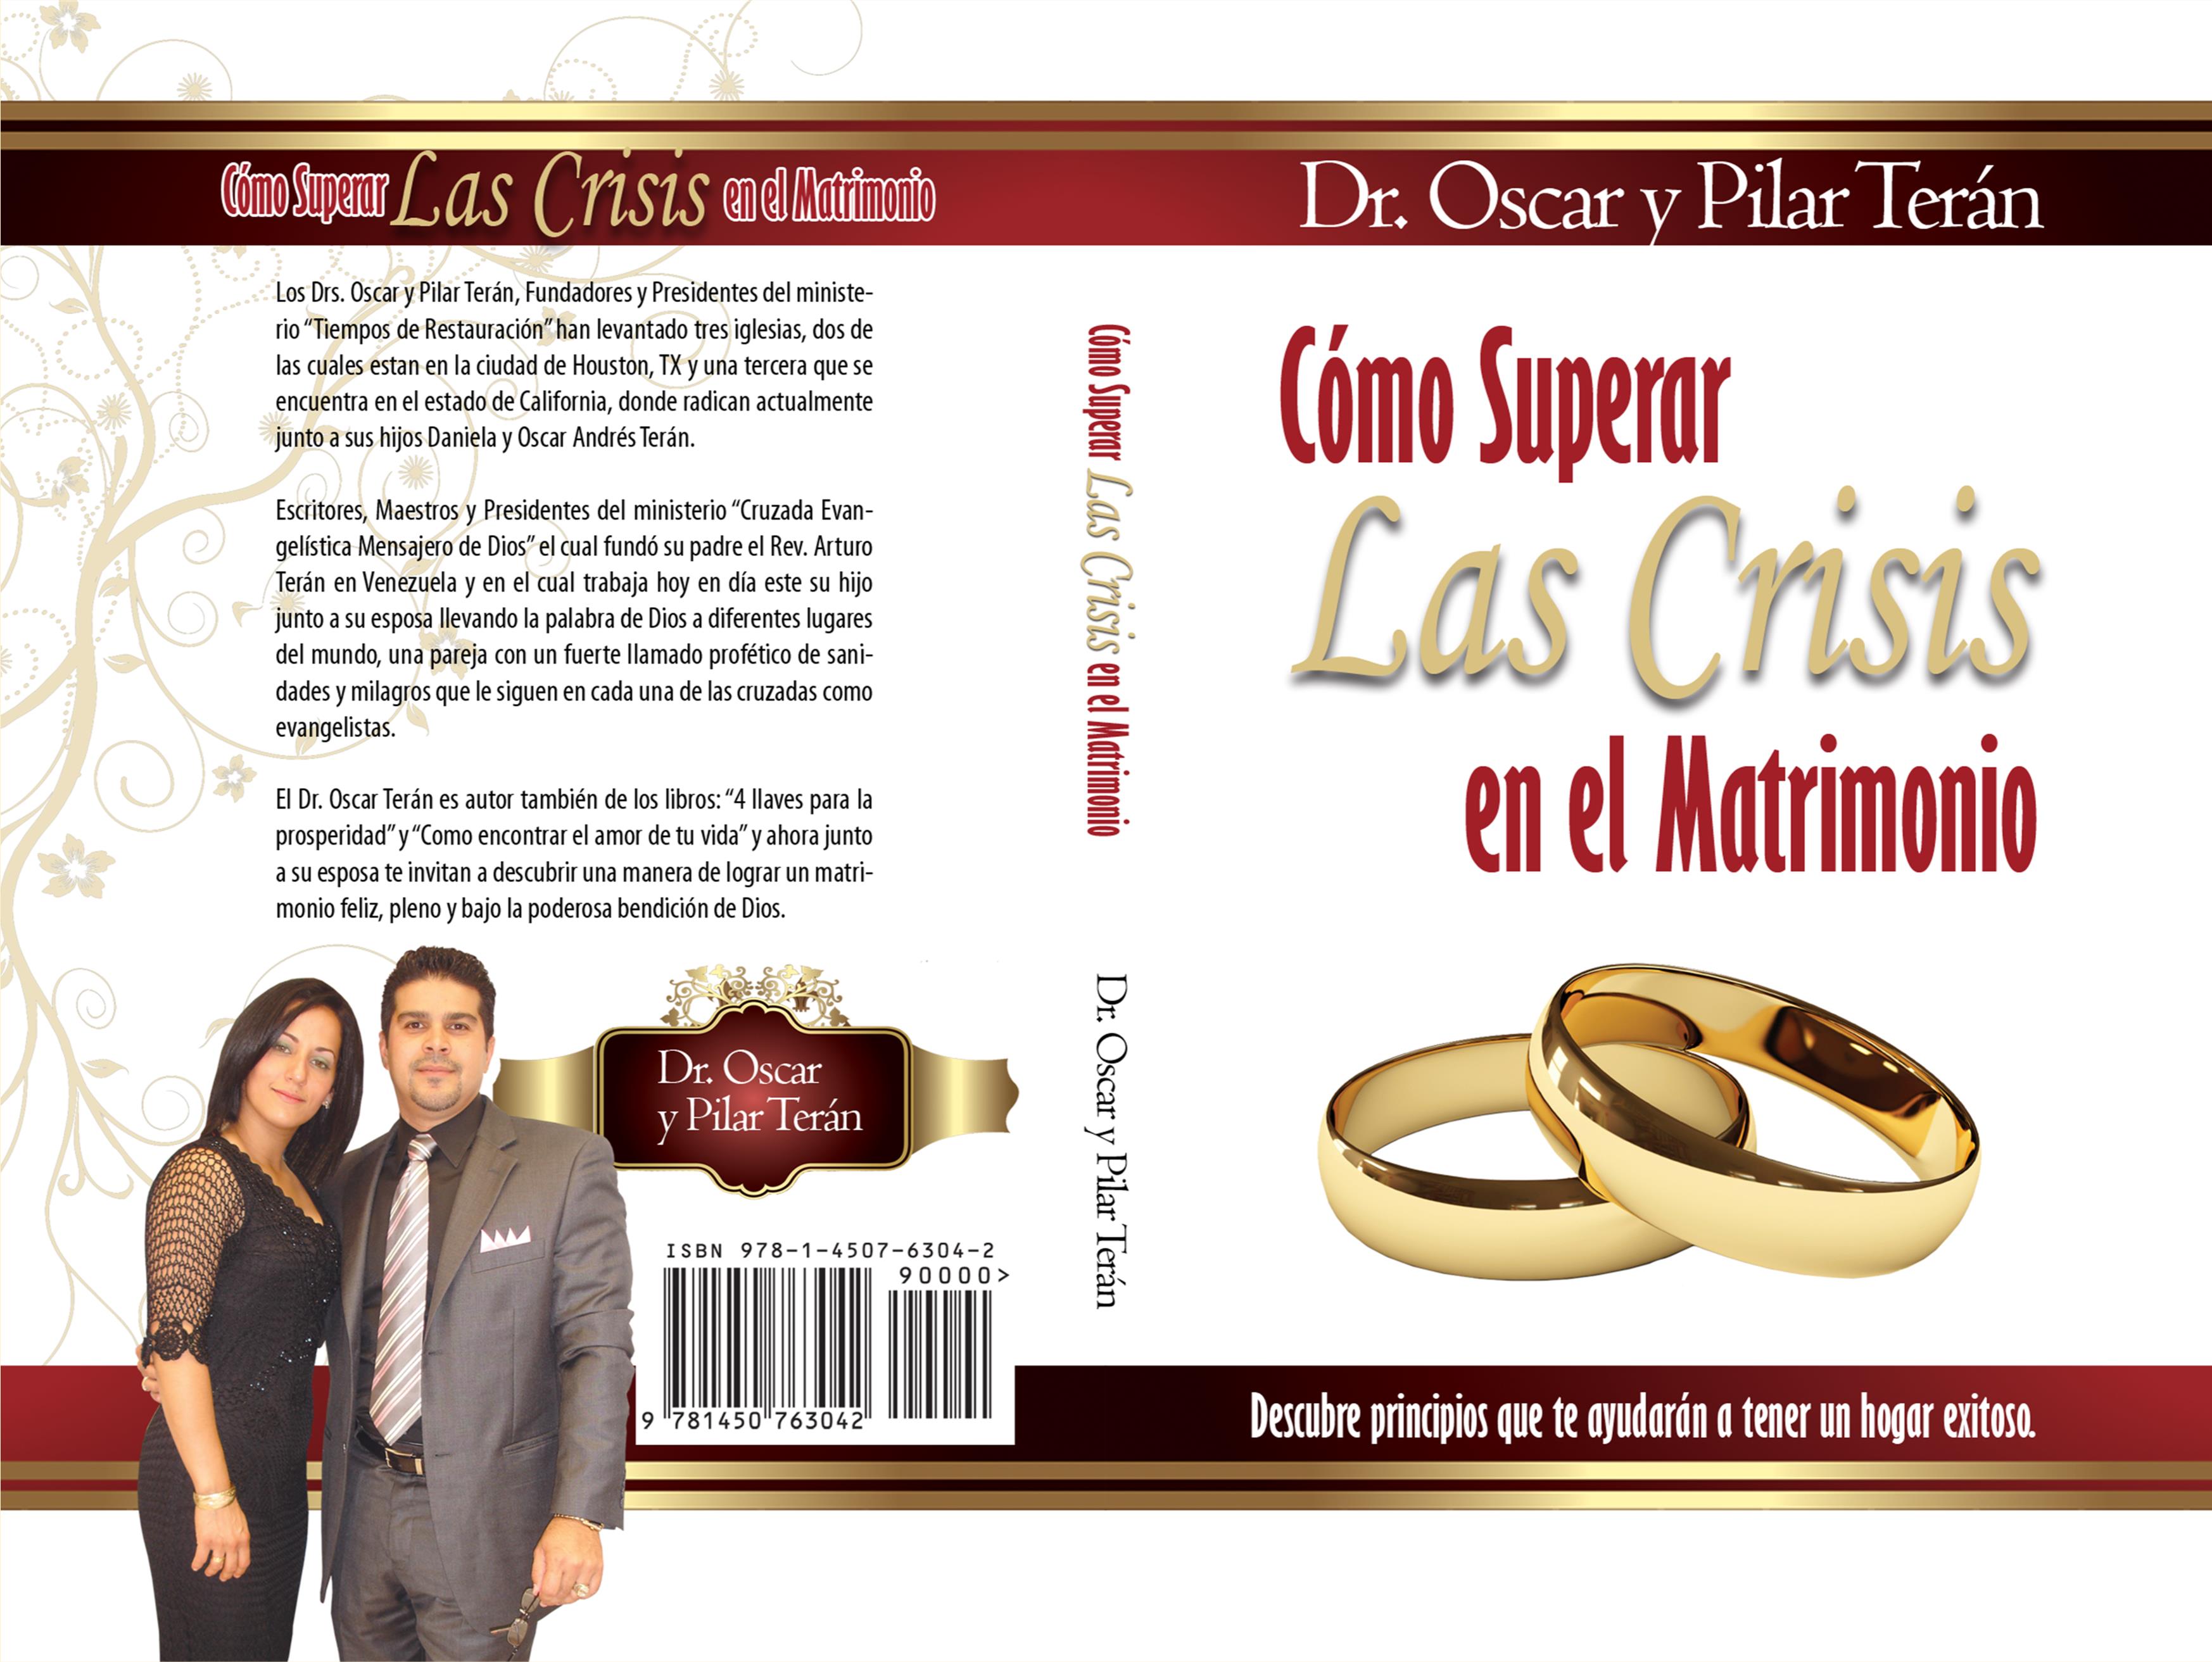 Como Superar las crisis en el Matrimonio cover image